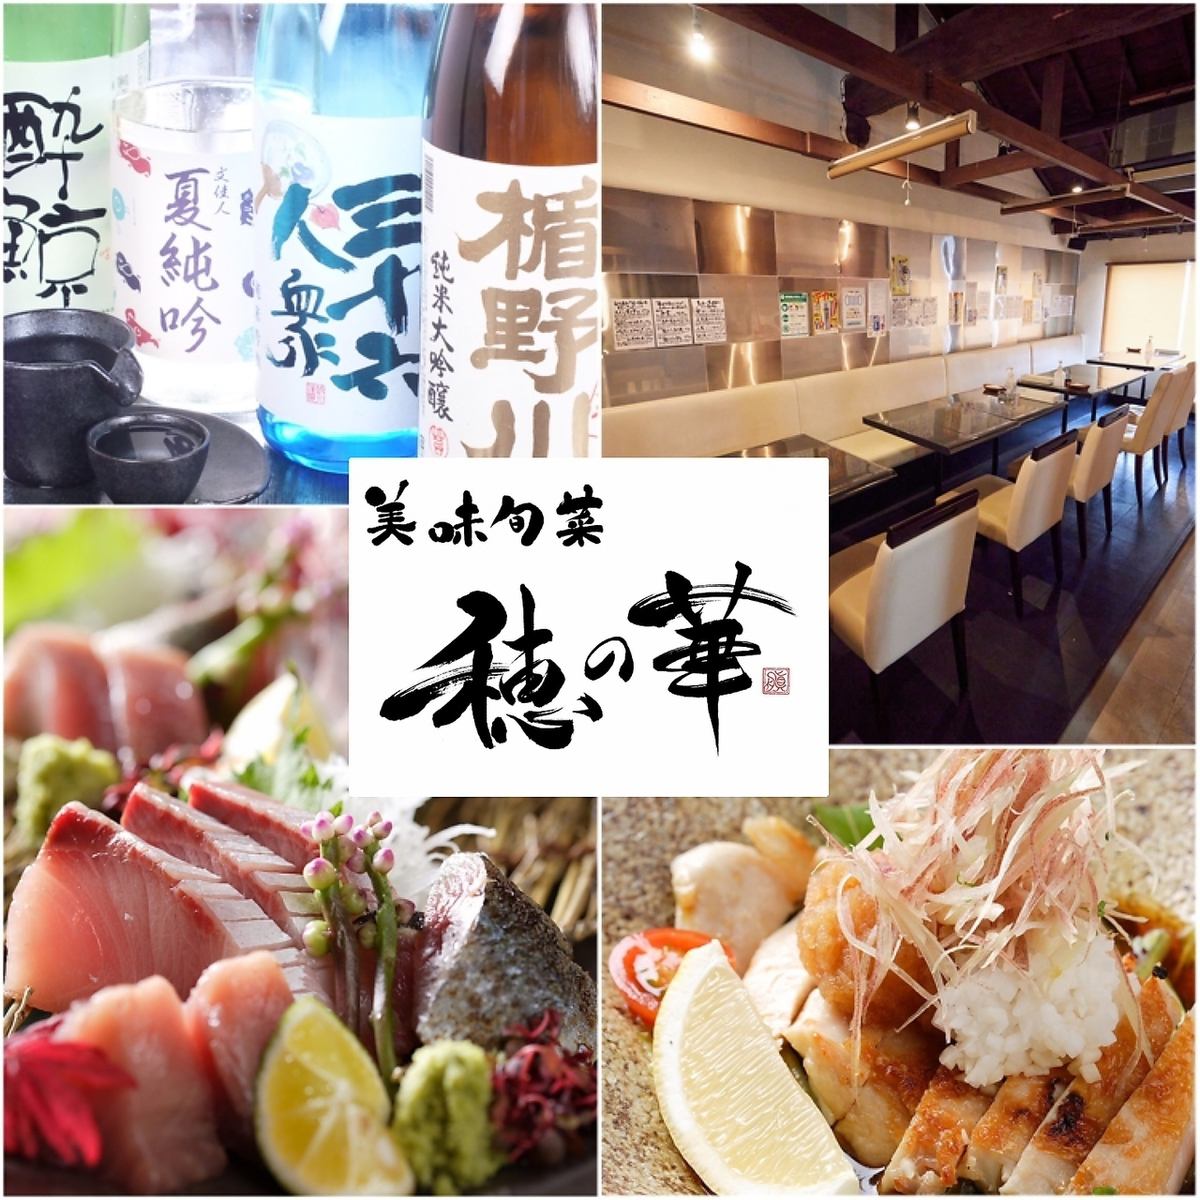 ≪套餐4,400日元〜≫從食材到烹飪方法，從空間到客戶服務，我們竭誠為顧客提供款待。